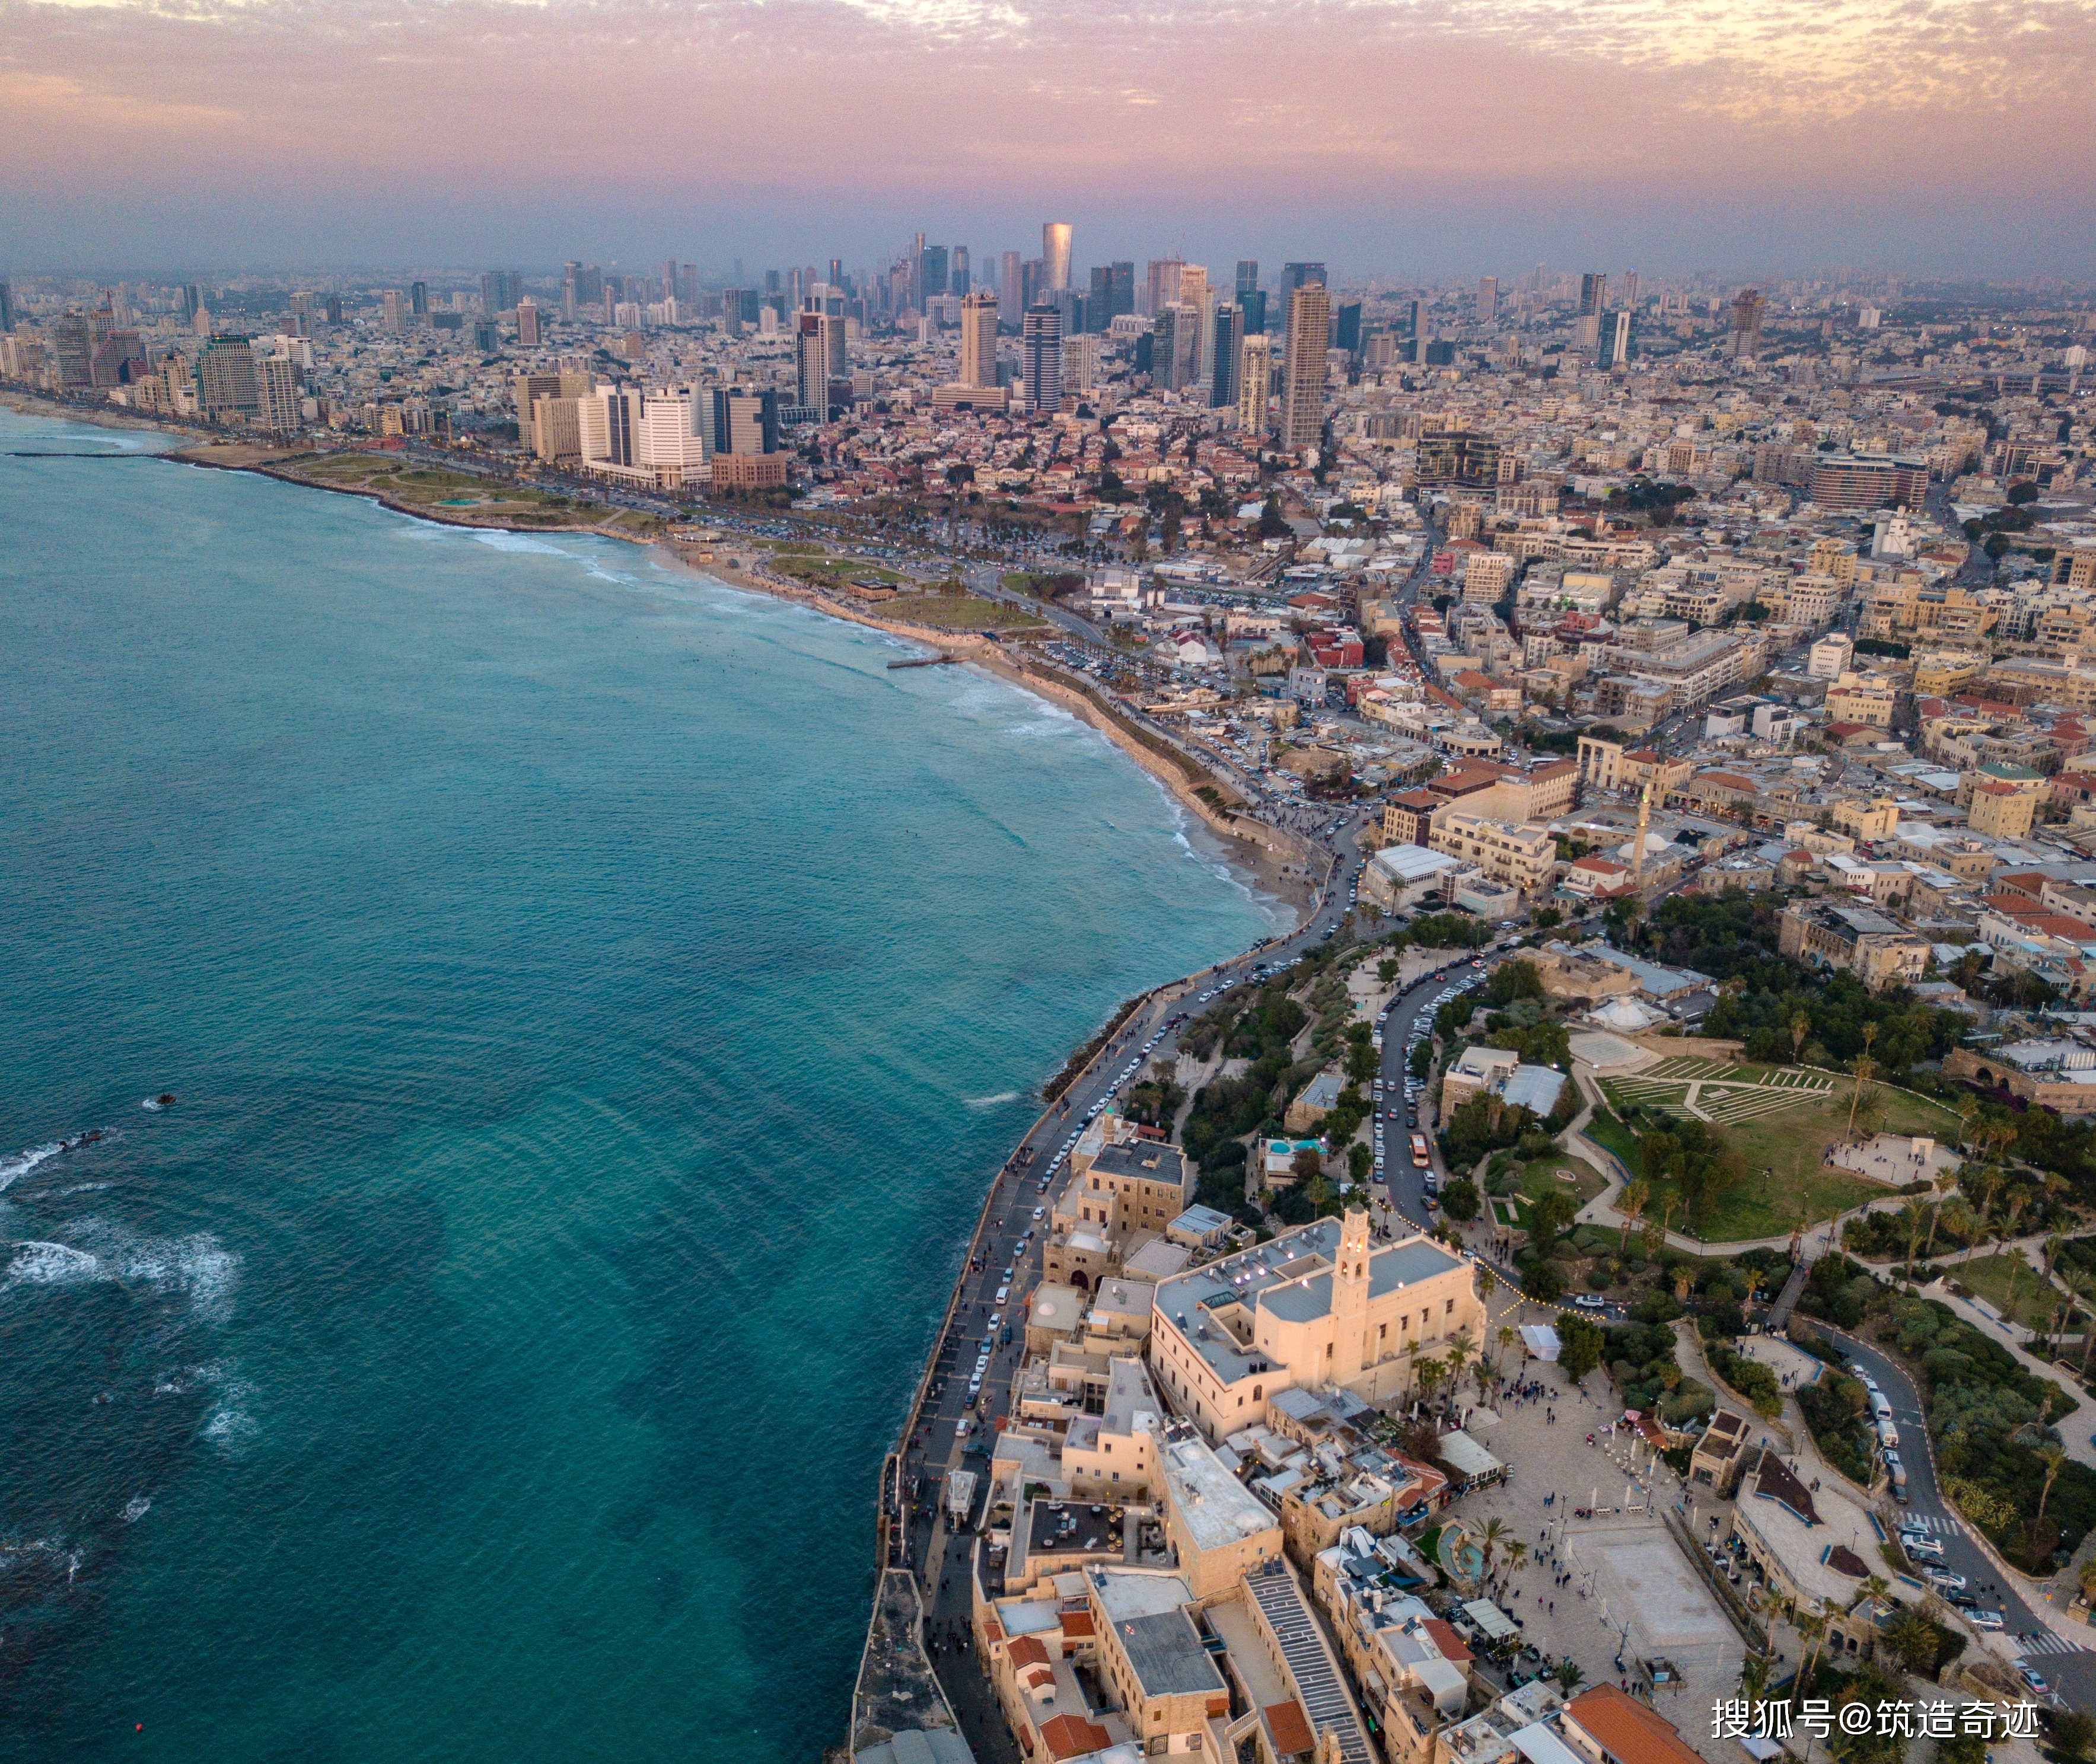 原创特拉维夫,以色列最为繁华的一座城市,算得上一线吗?